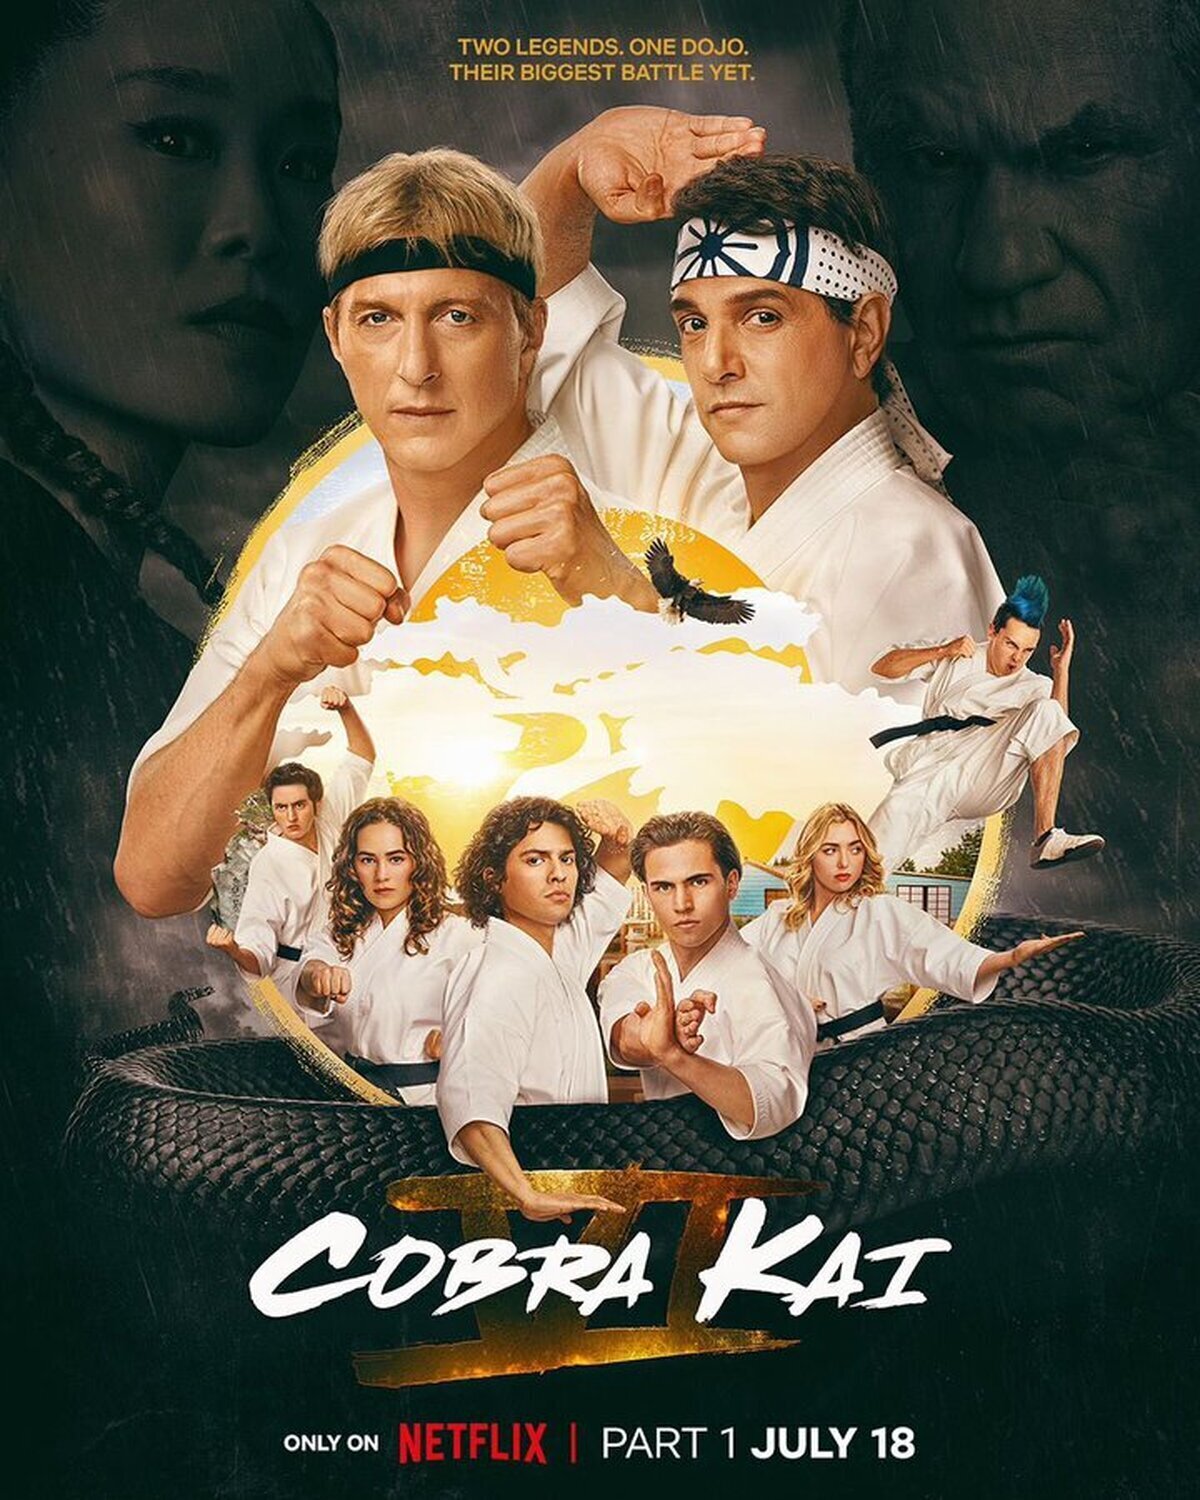 ¡El final de Cobra Kai ya esta aquí! Netflix da cierre al legado de Daniel Larusso